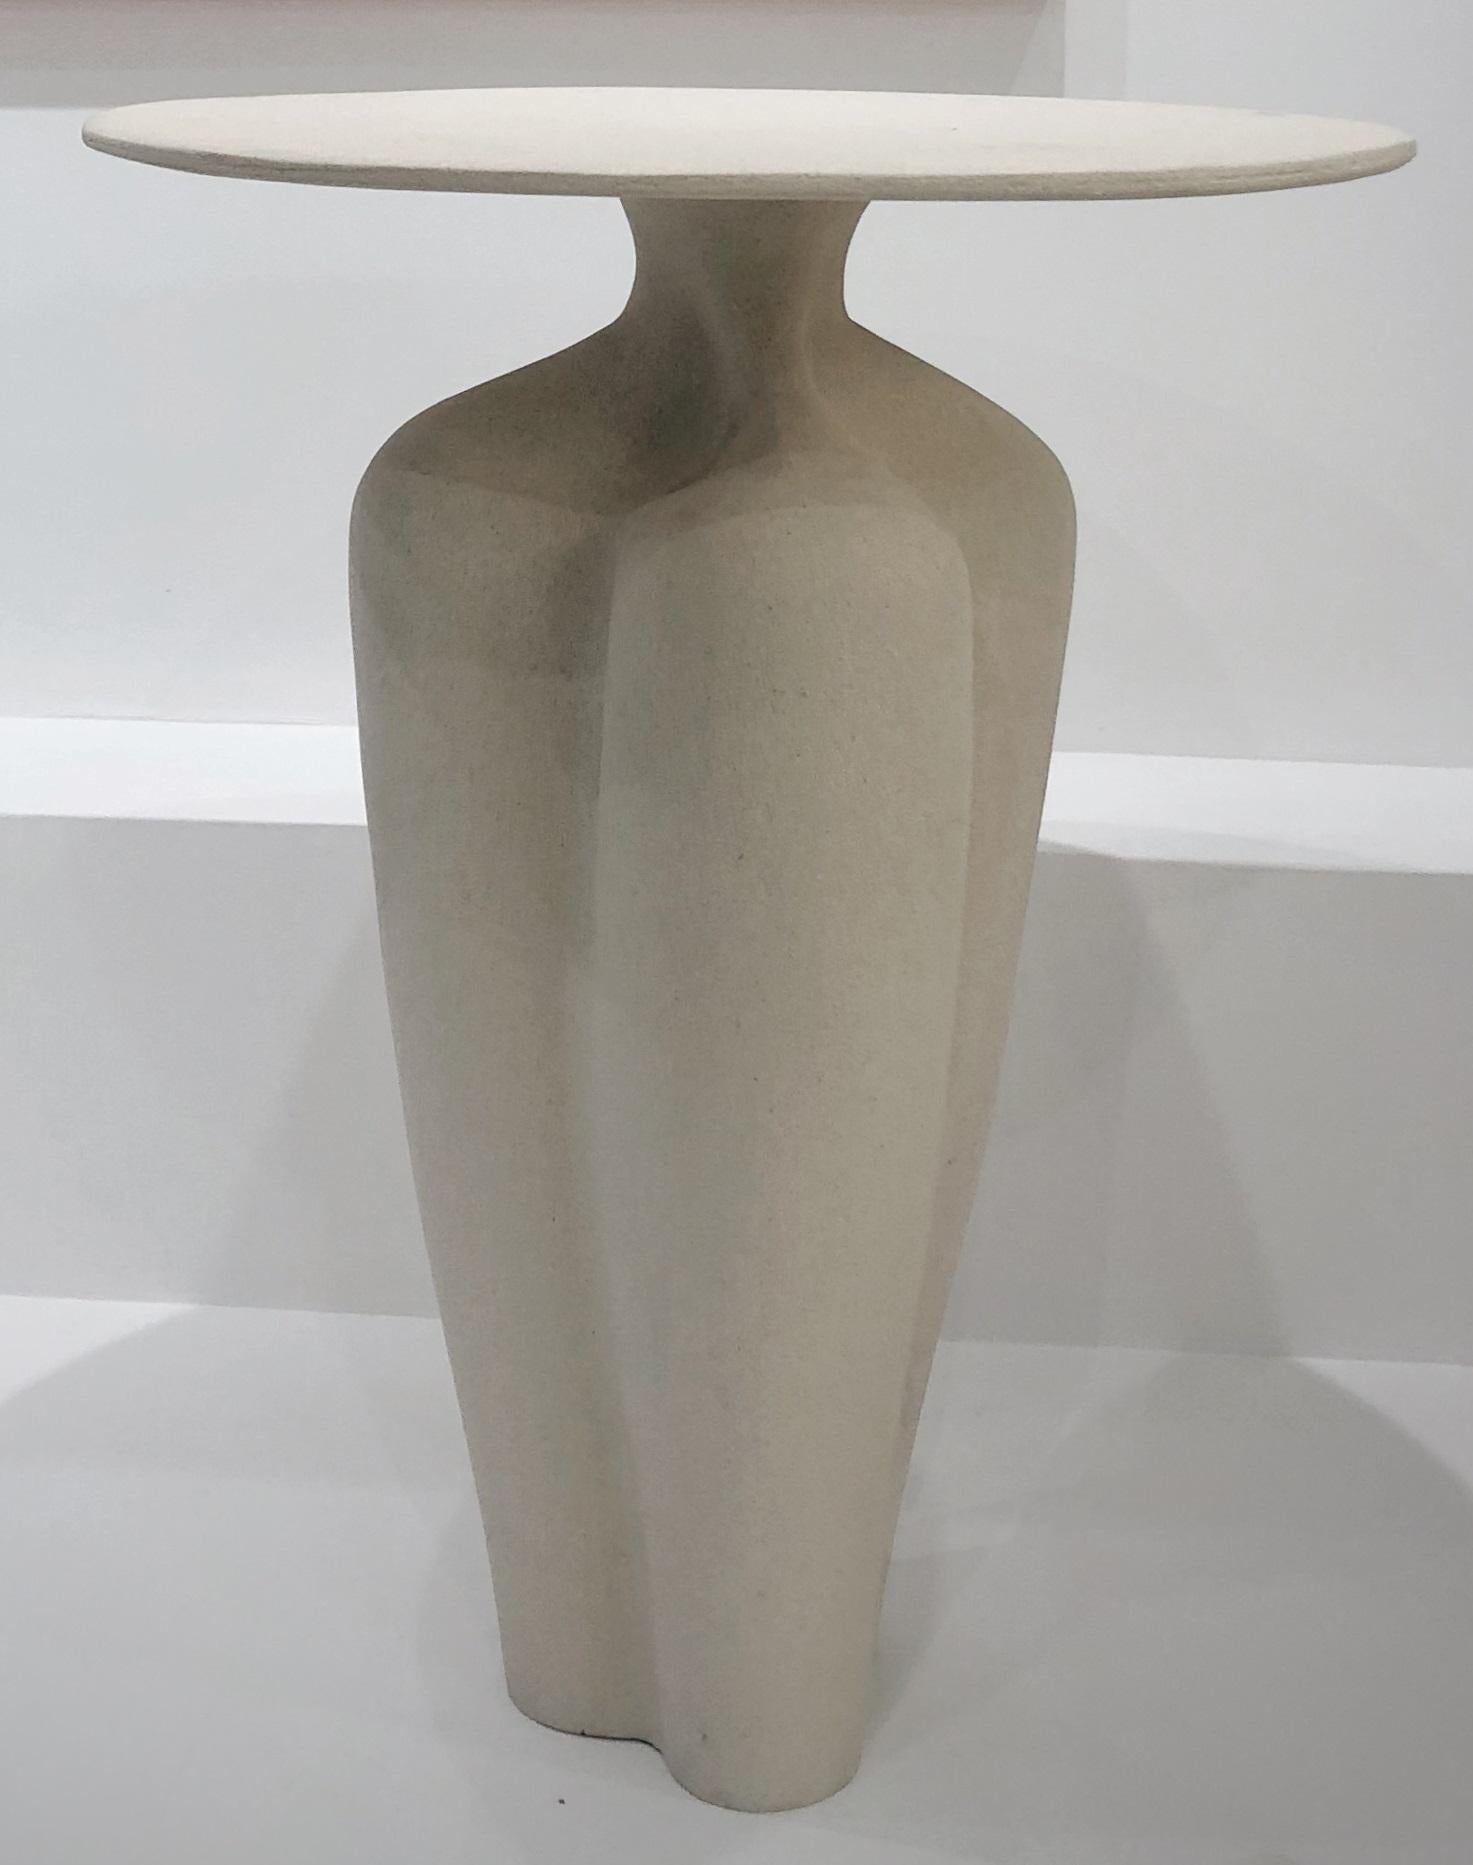 Steingut-Beistelltisch 2 von Sophie Vaidie
Einzigartig.
Abmessungen: Ø 44 x H 62 cm. 
MATERIALIEN: Beigefarbenes Steingut mit beiger Glasur.

Am Anfang stand das Bedürfnis, mit den Händen, dem Tastsinn, den Sinnen zu arbeiten. Dann kam der Wunsch